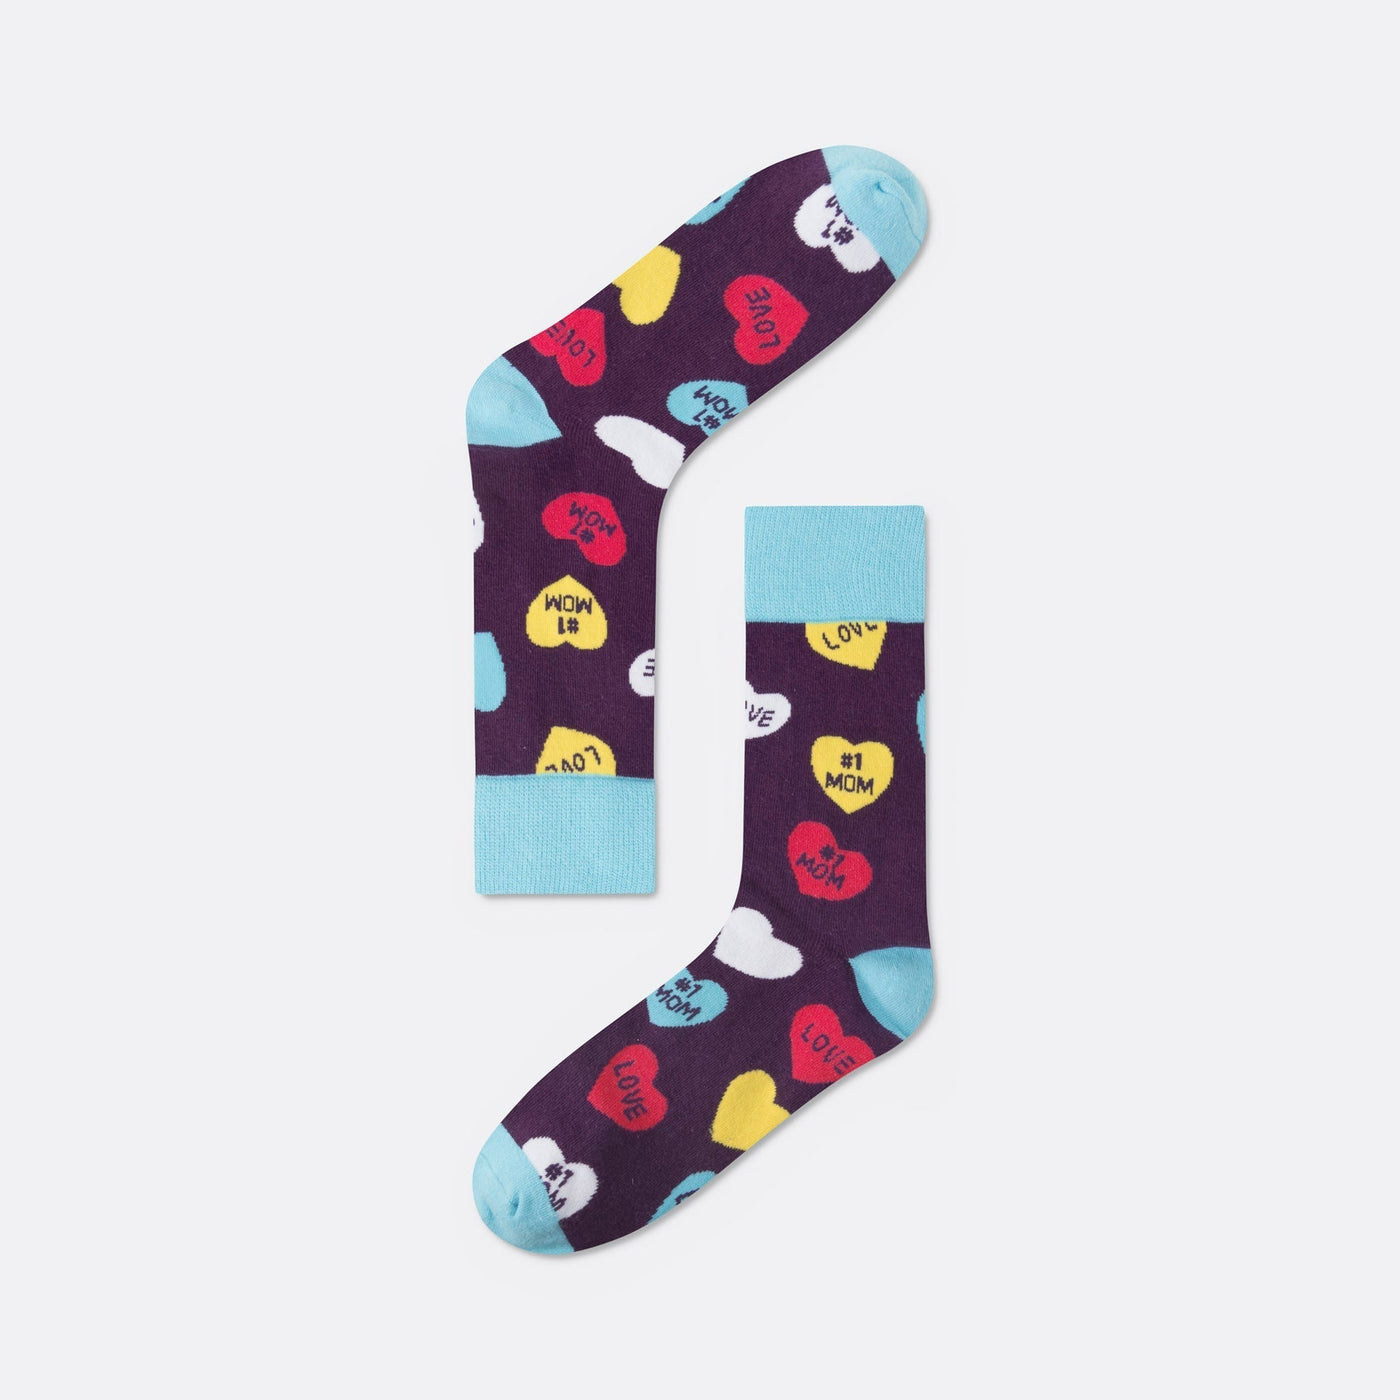 #1 Mom Socken Geschenkbox (3er-Pack)